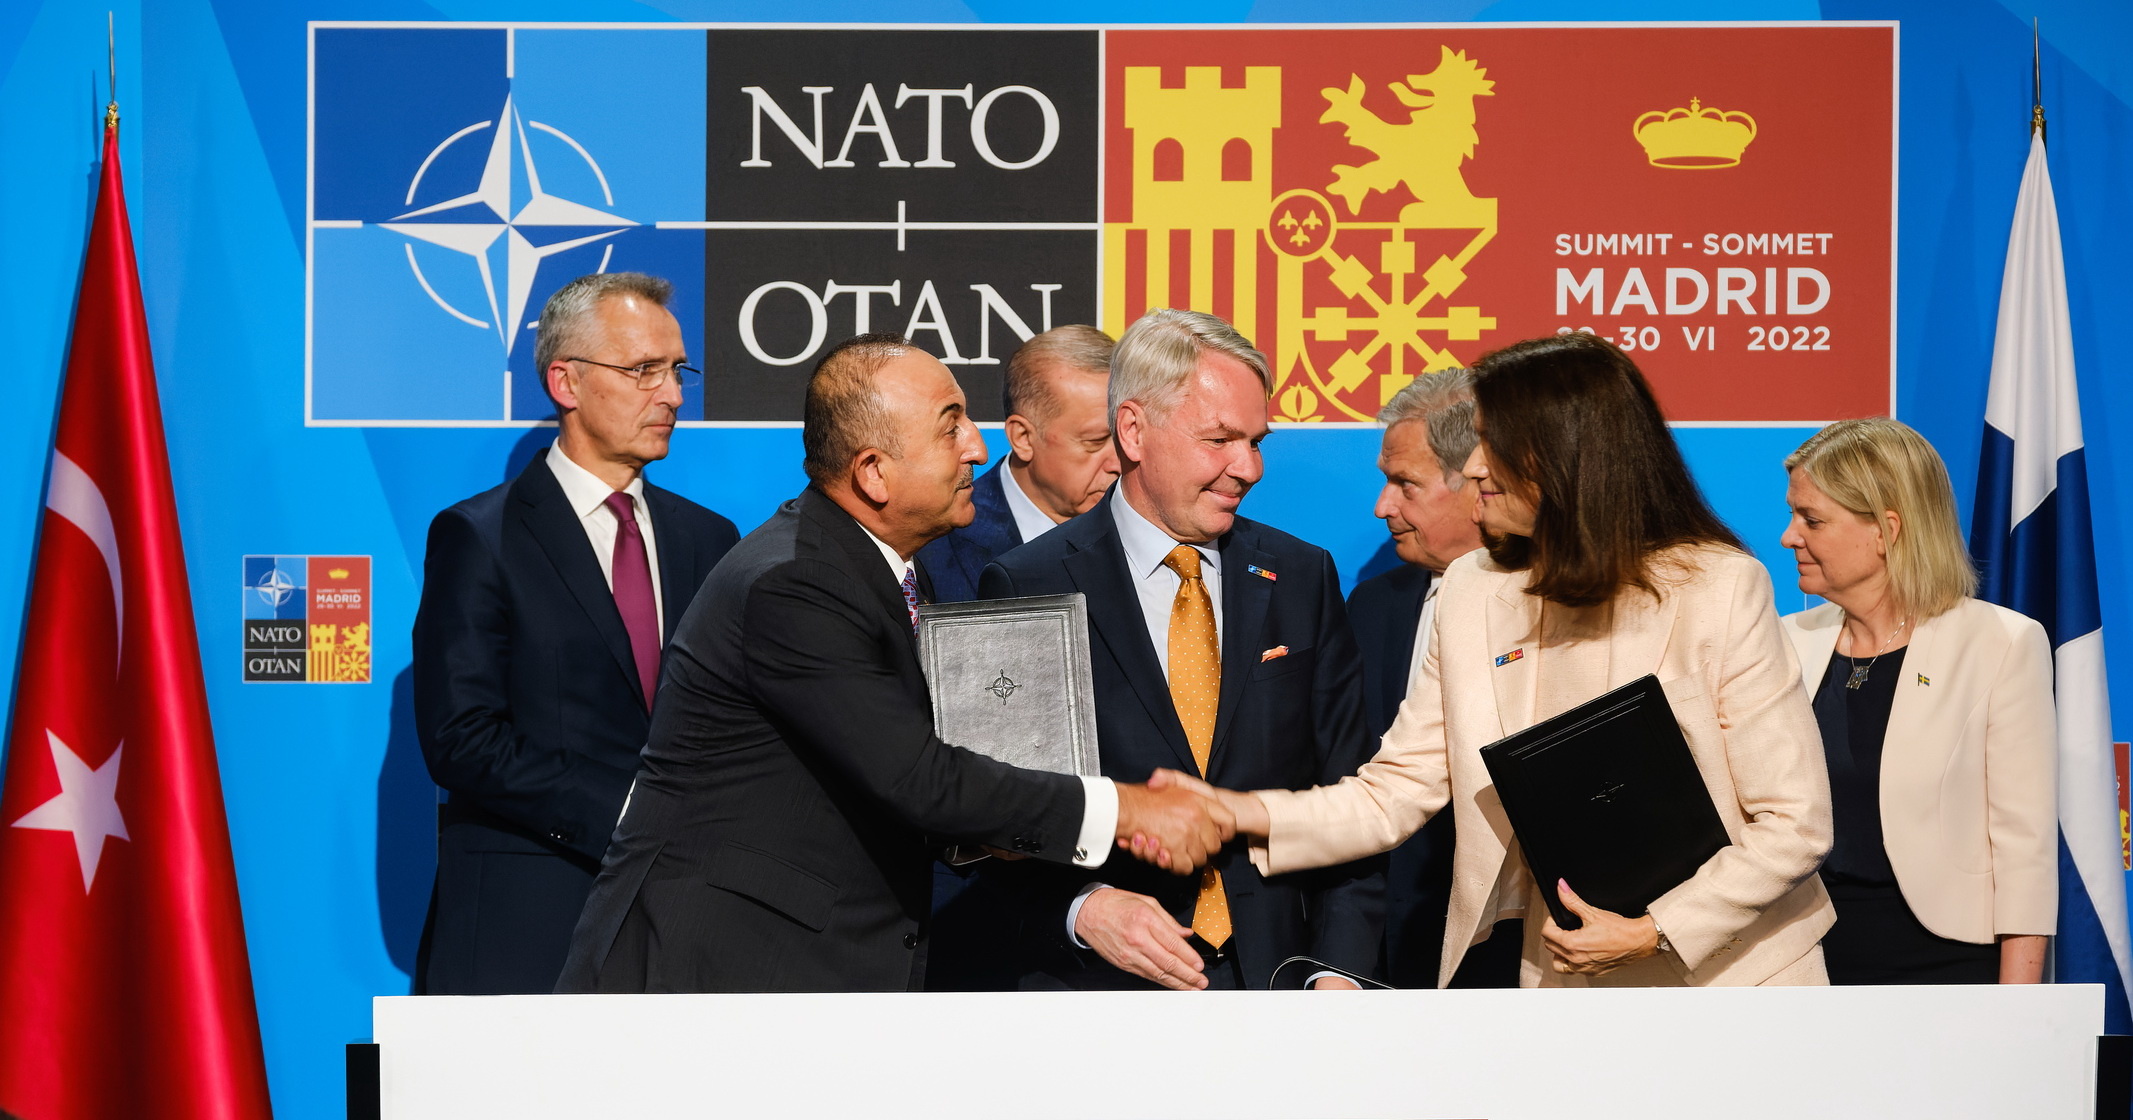 Зустріч лідерів Швеції, Фінляндії та Туреччини з генсеком НАТО в Мадриді перед початком саміту Альянсуфото: nato, twitter